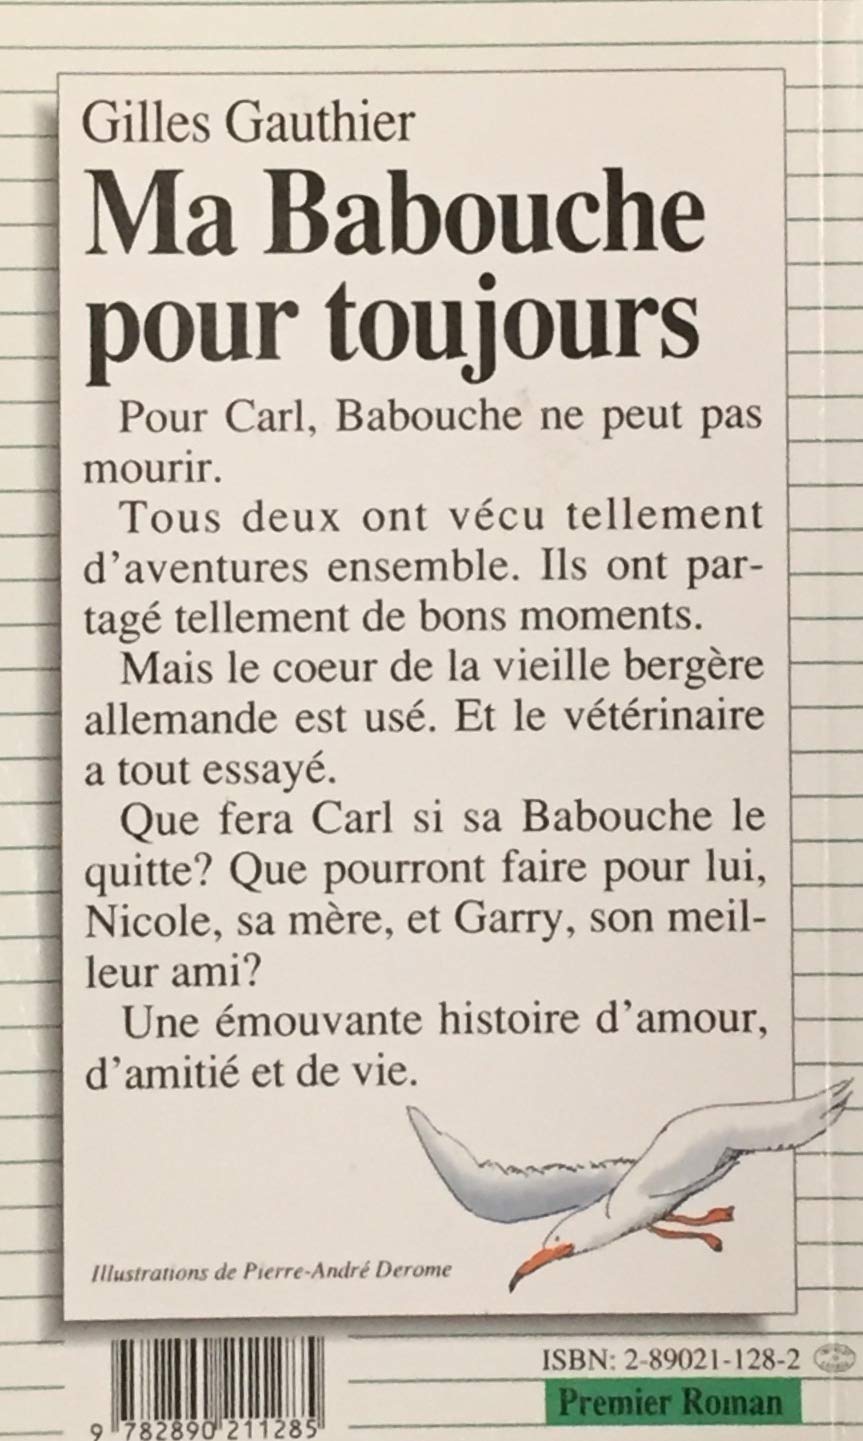 Premier roman # 14 : Ma Babouche pour toujours (Gilles Gauthier)